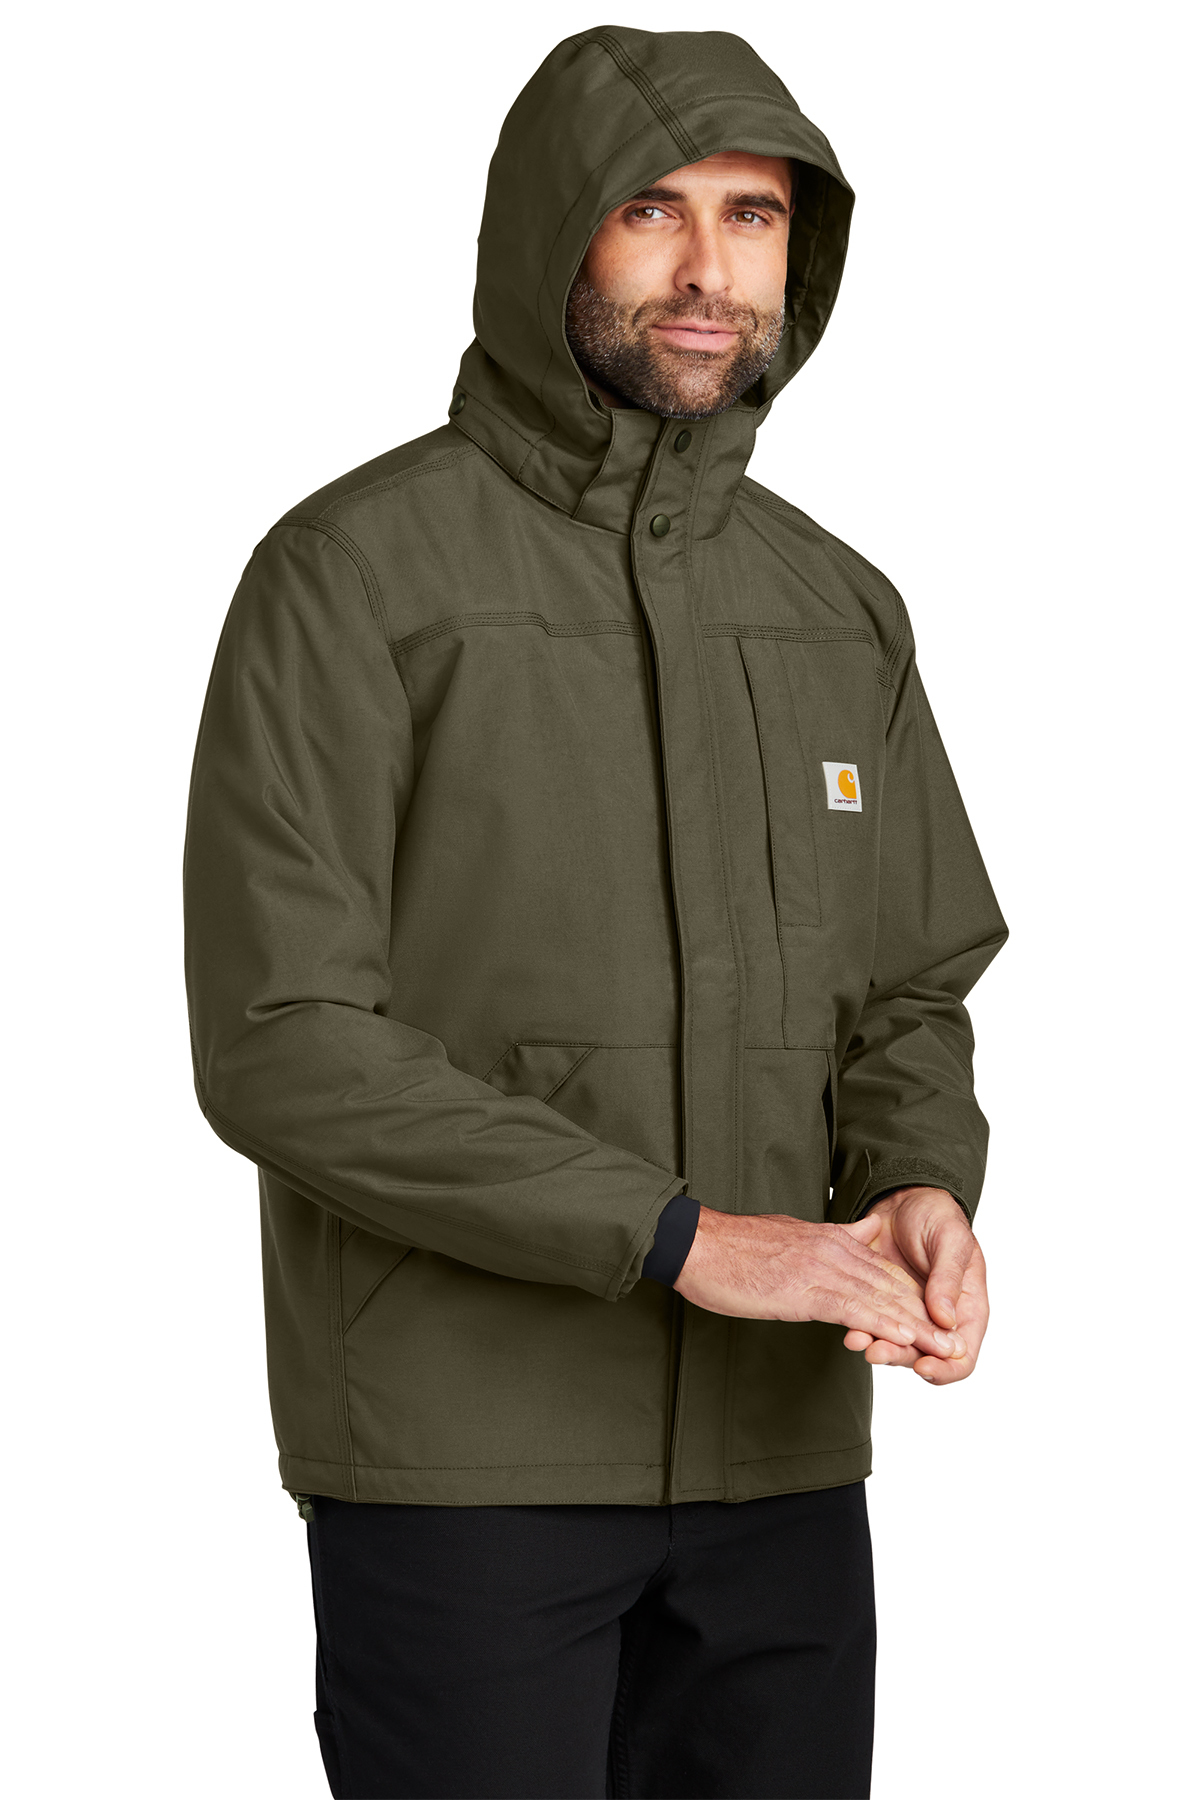 Carhartt Storm Defender Shoreline Jacket | Product | Company Casuals